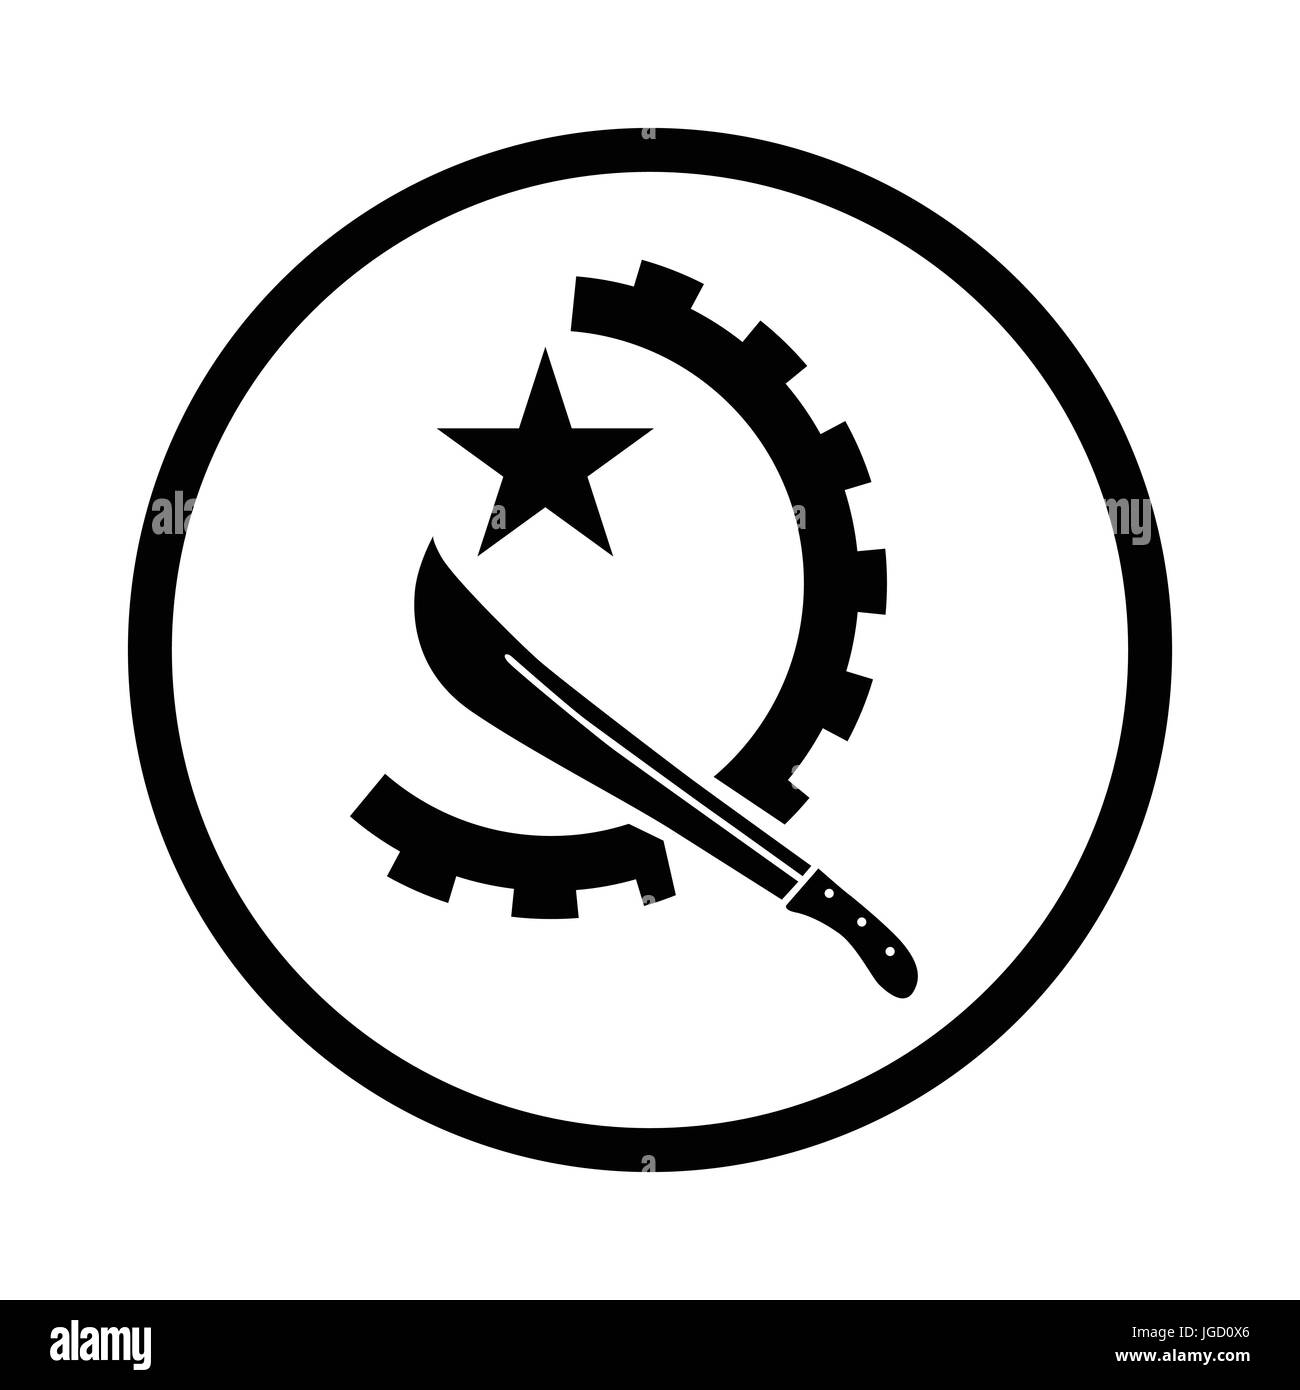 Symbole de l'Angola, l'icône symbole iconique dans un cercle, sur fond blanc. Vector design iconique. Illustration de Vecteur